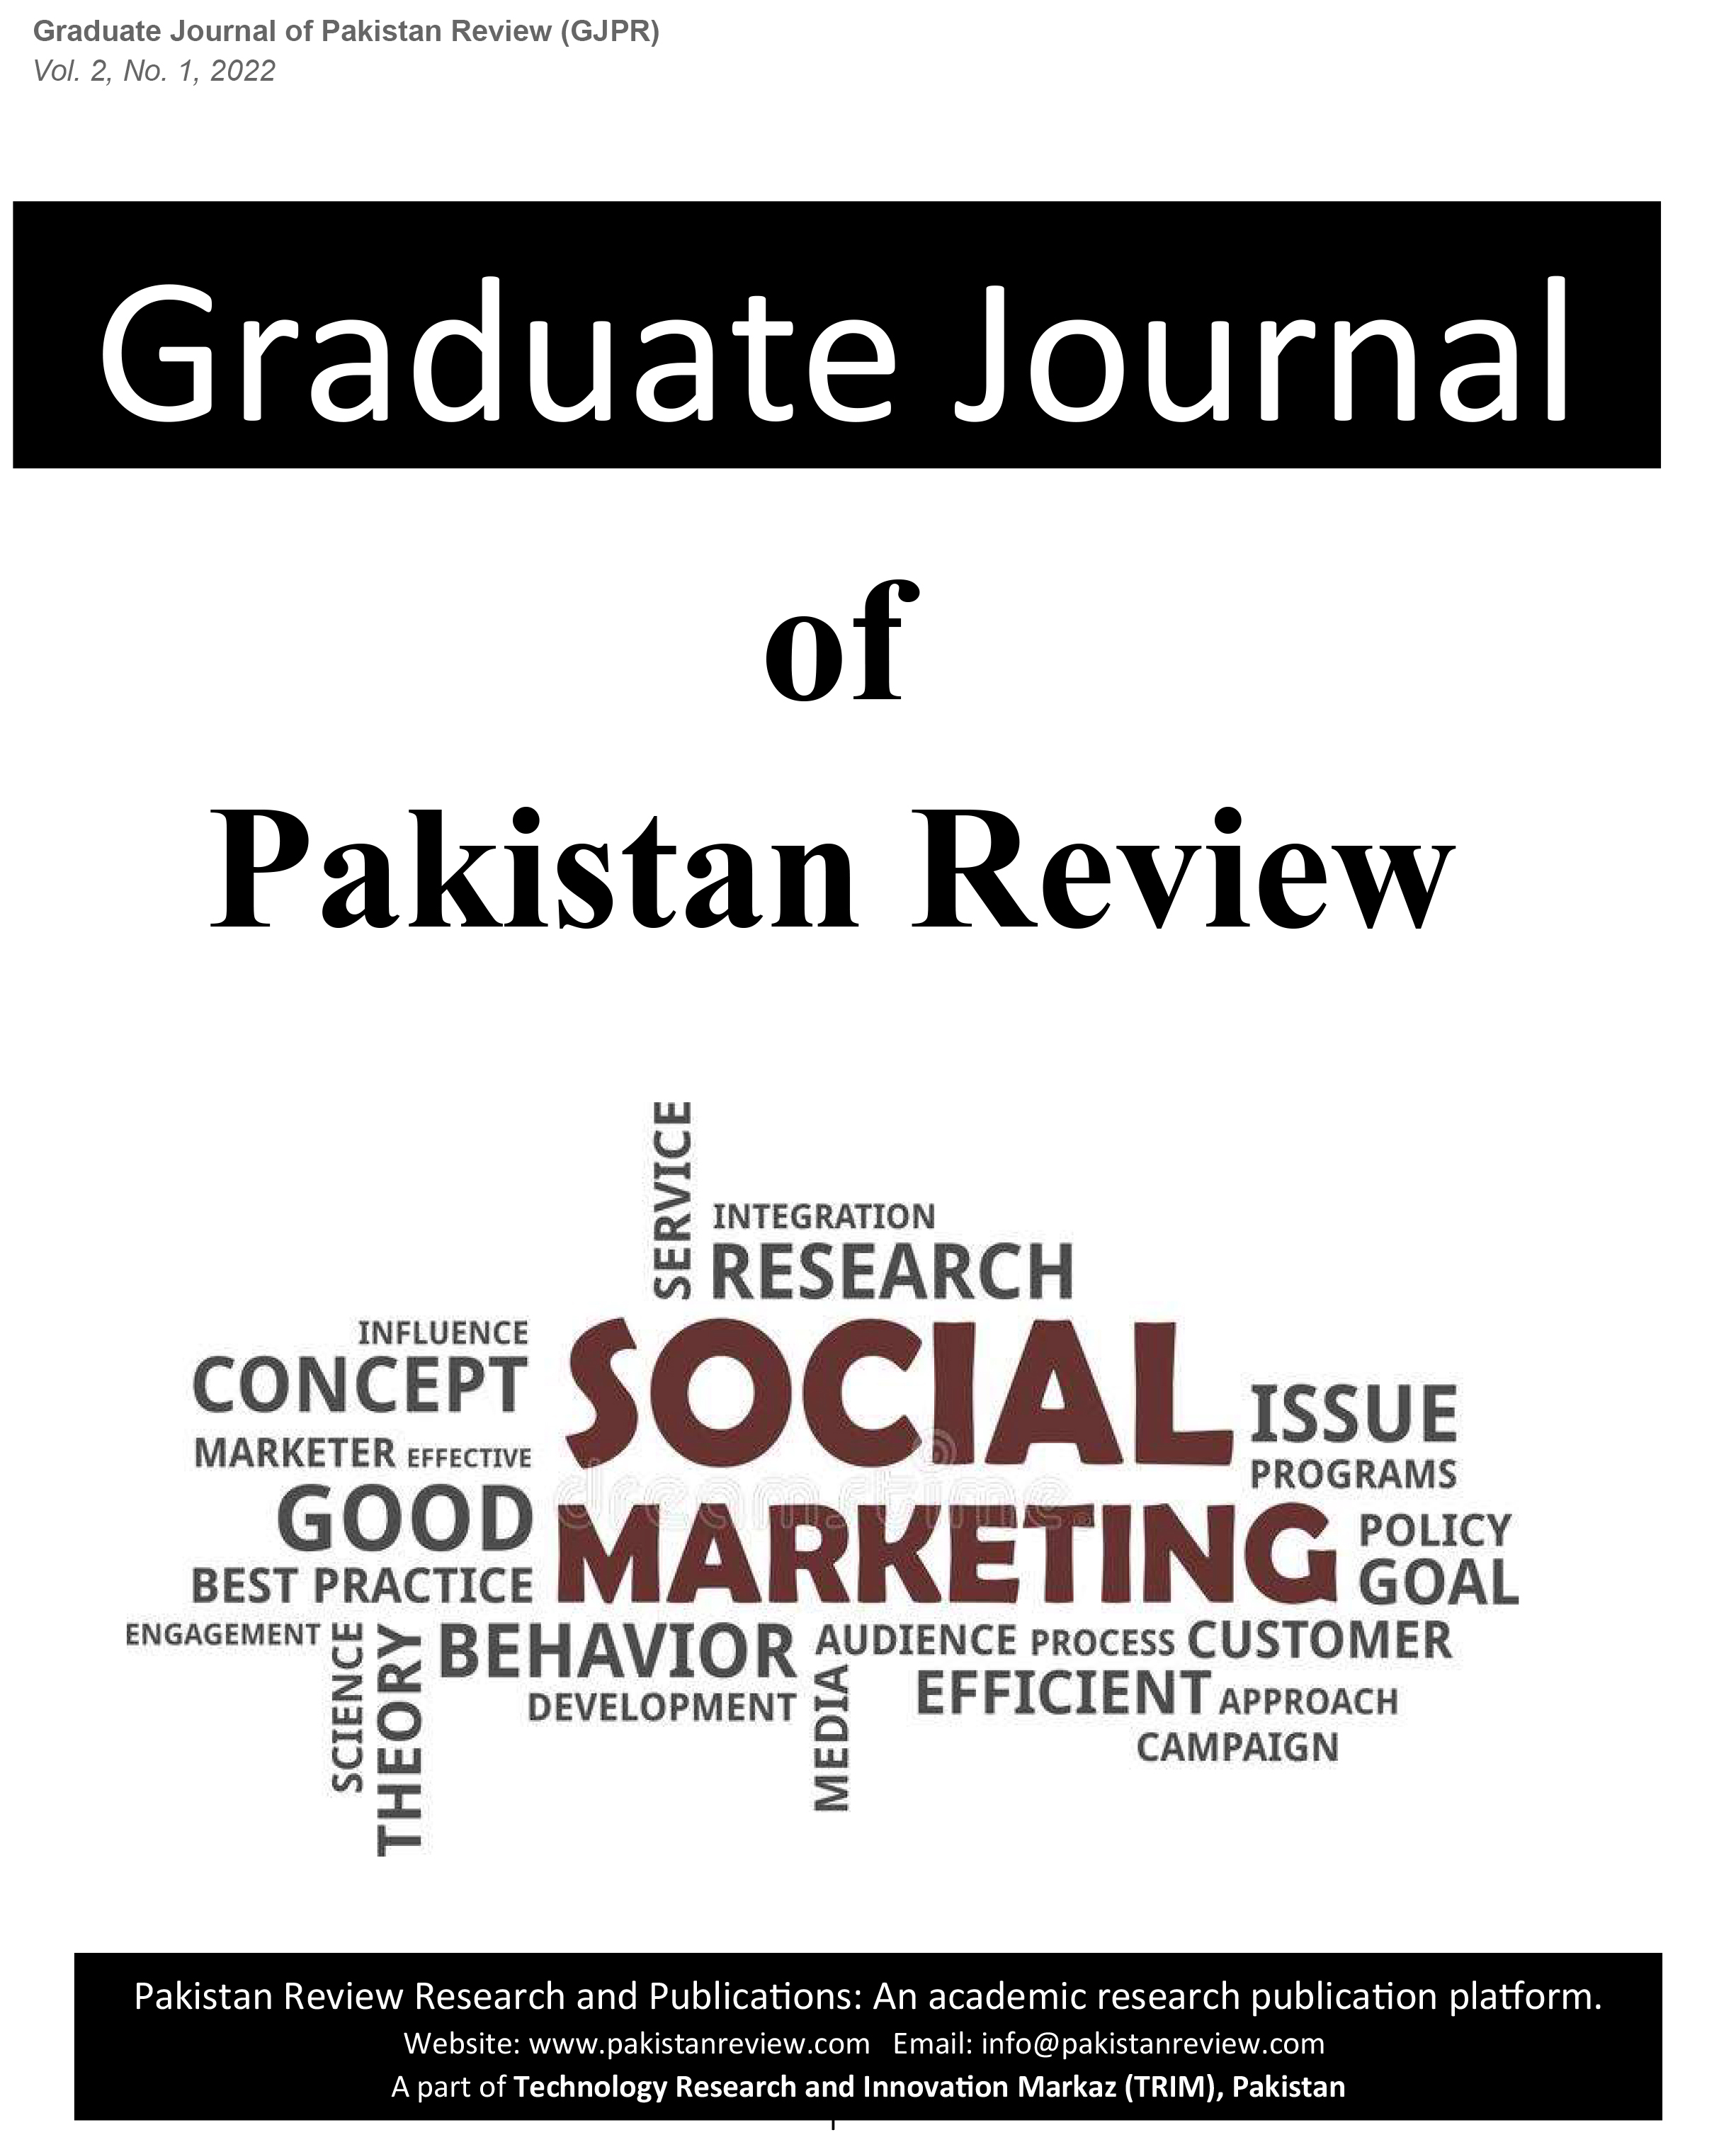 					View Vol. 2 No. 1 (2022): Graduate Journal of Pakistan Review (GJPR)
				